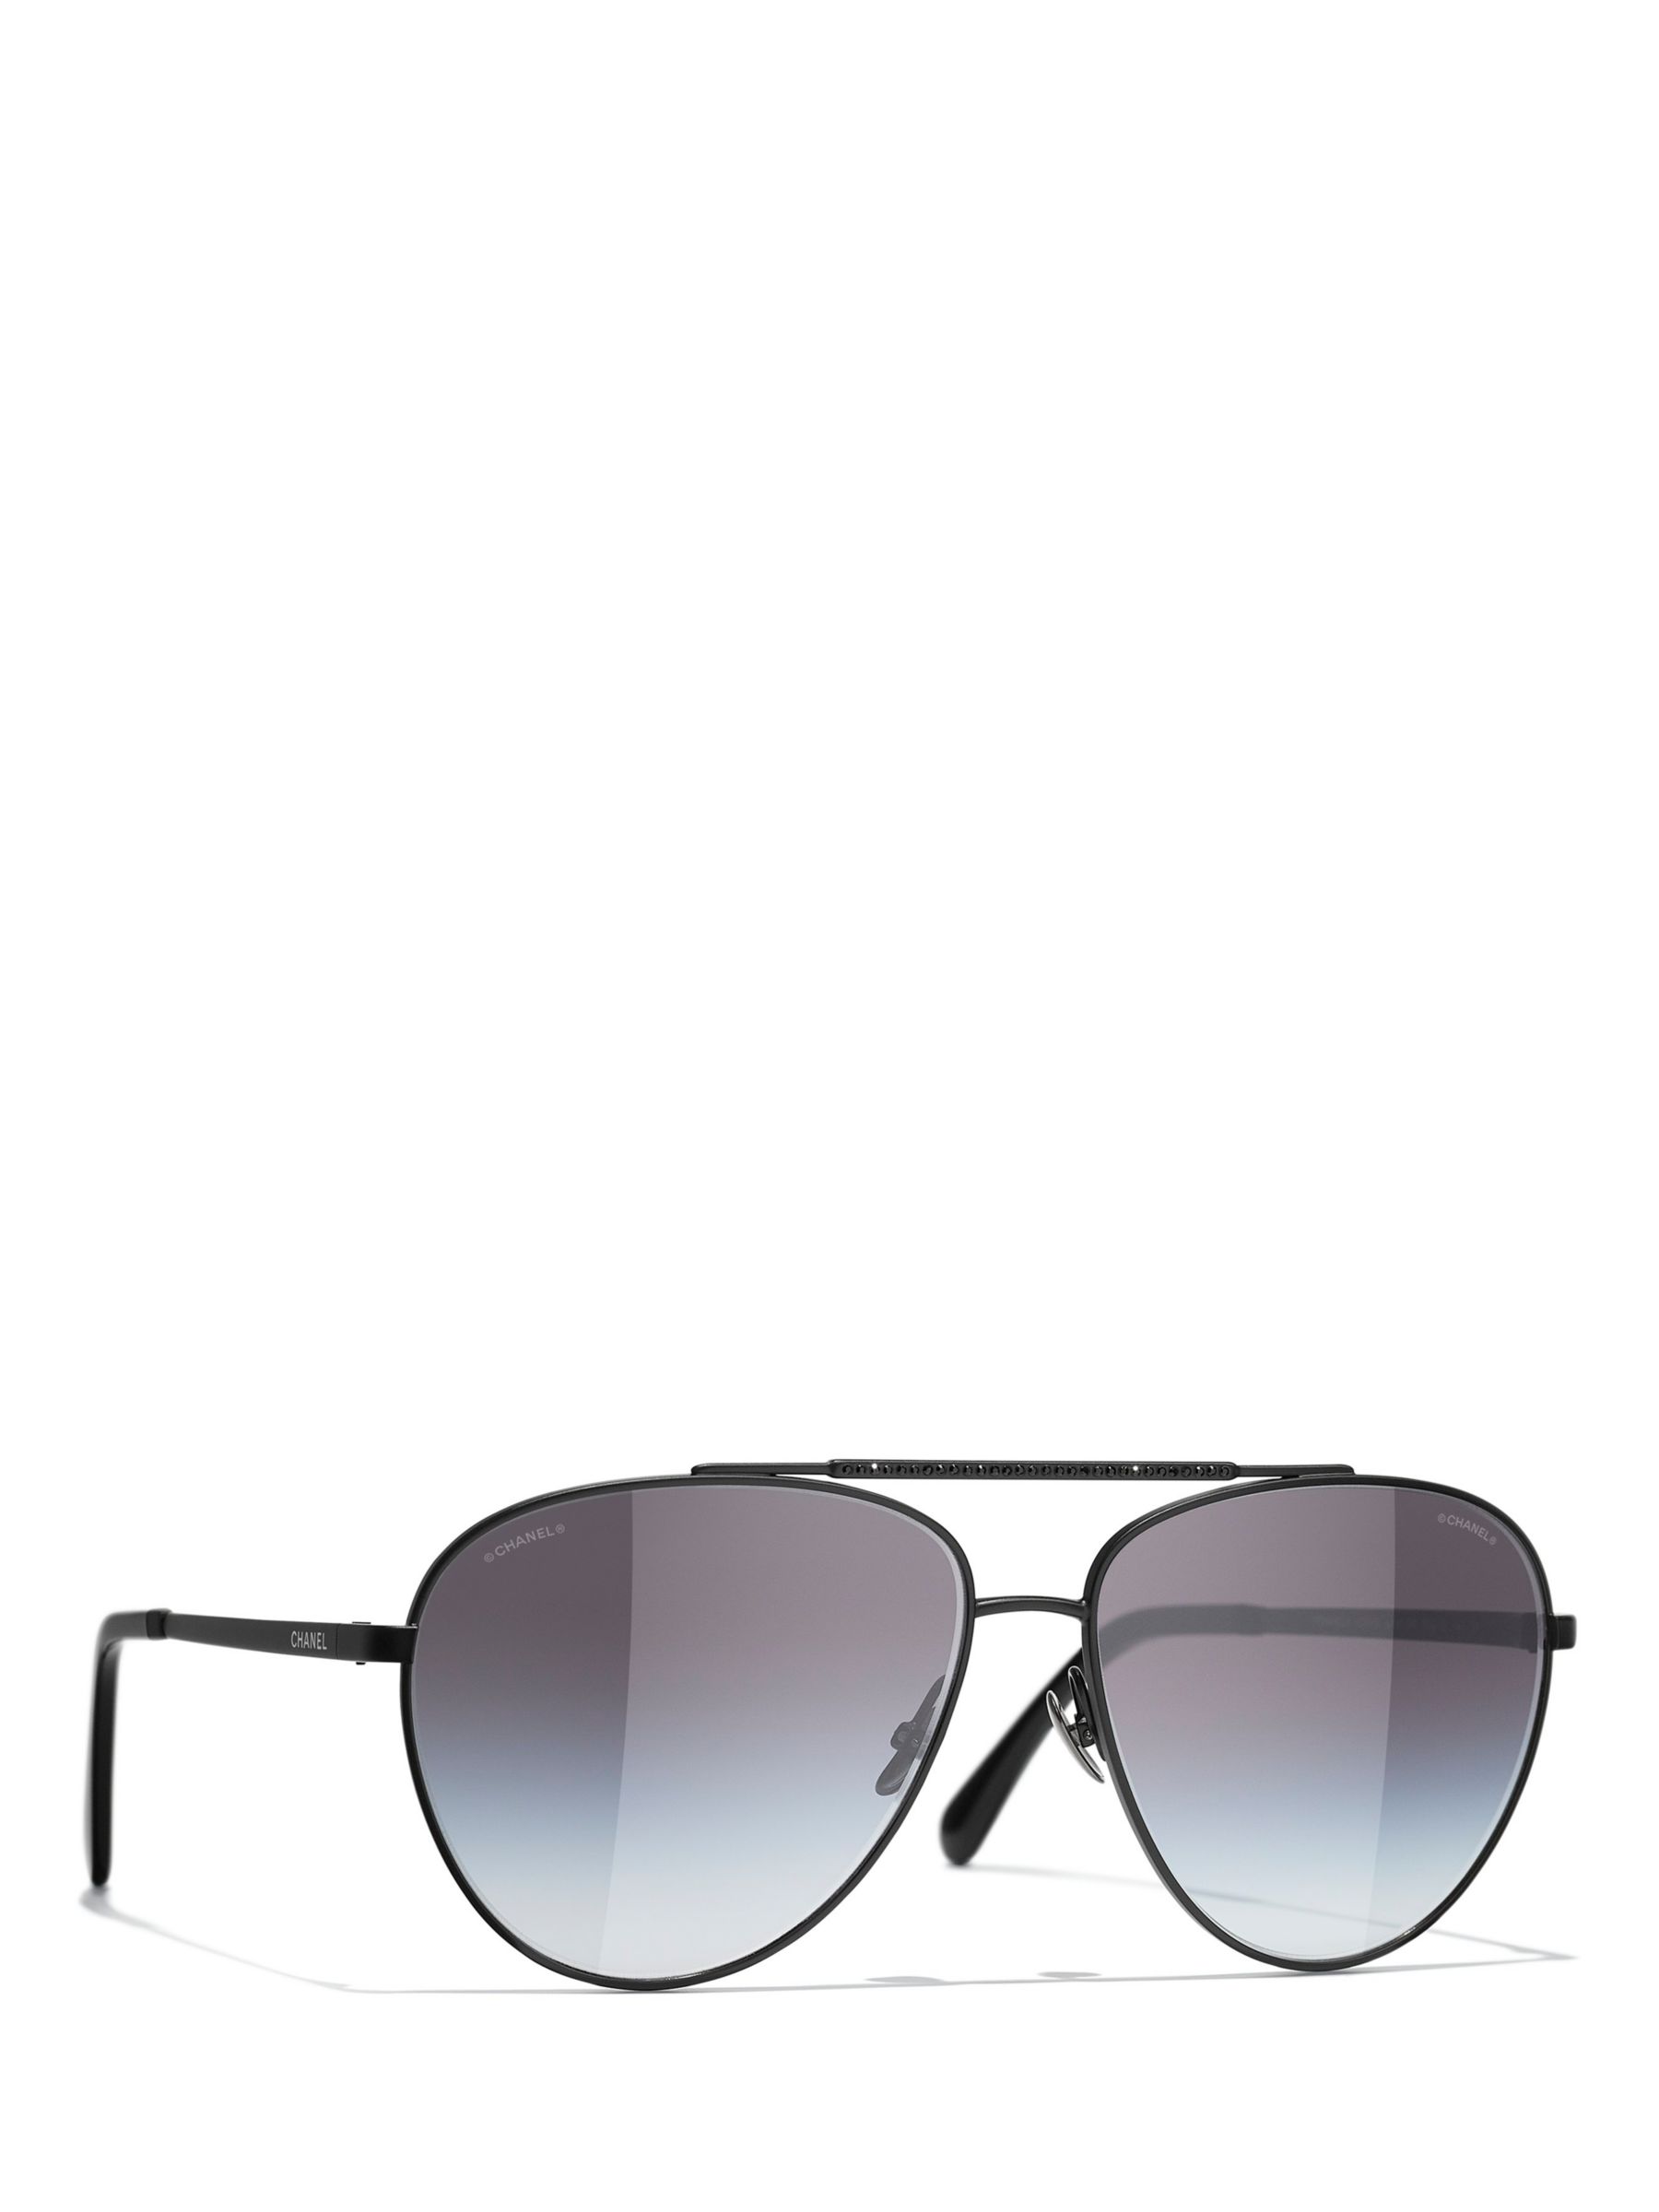 Sunglasses Chanel Chaîne CC Black Matte CH4265Q C101/S4 53-21 in